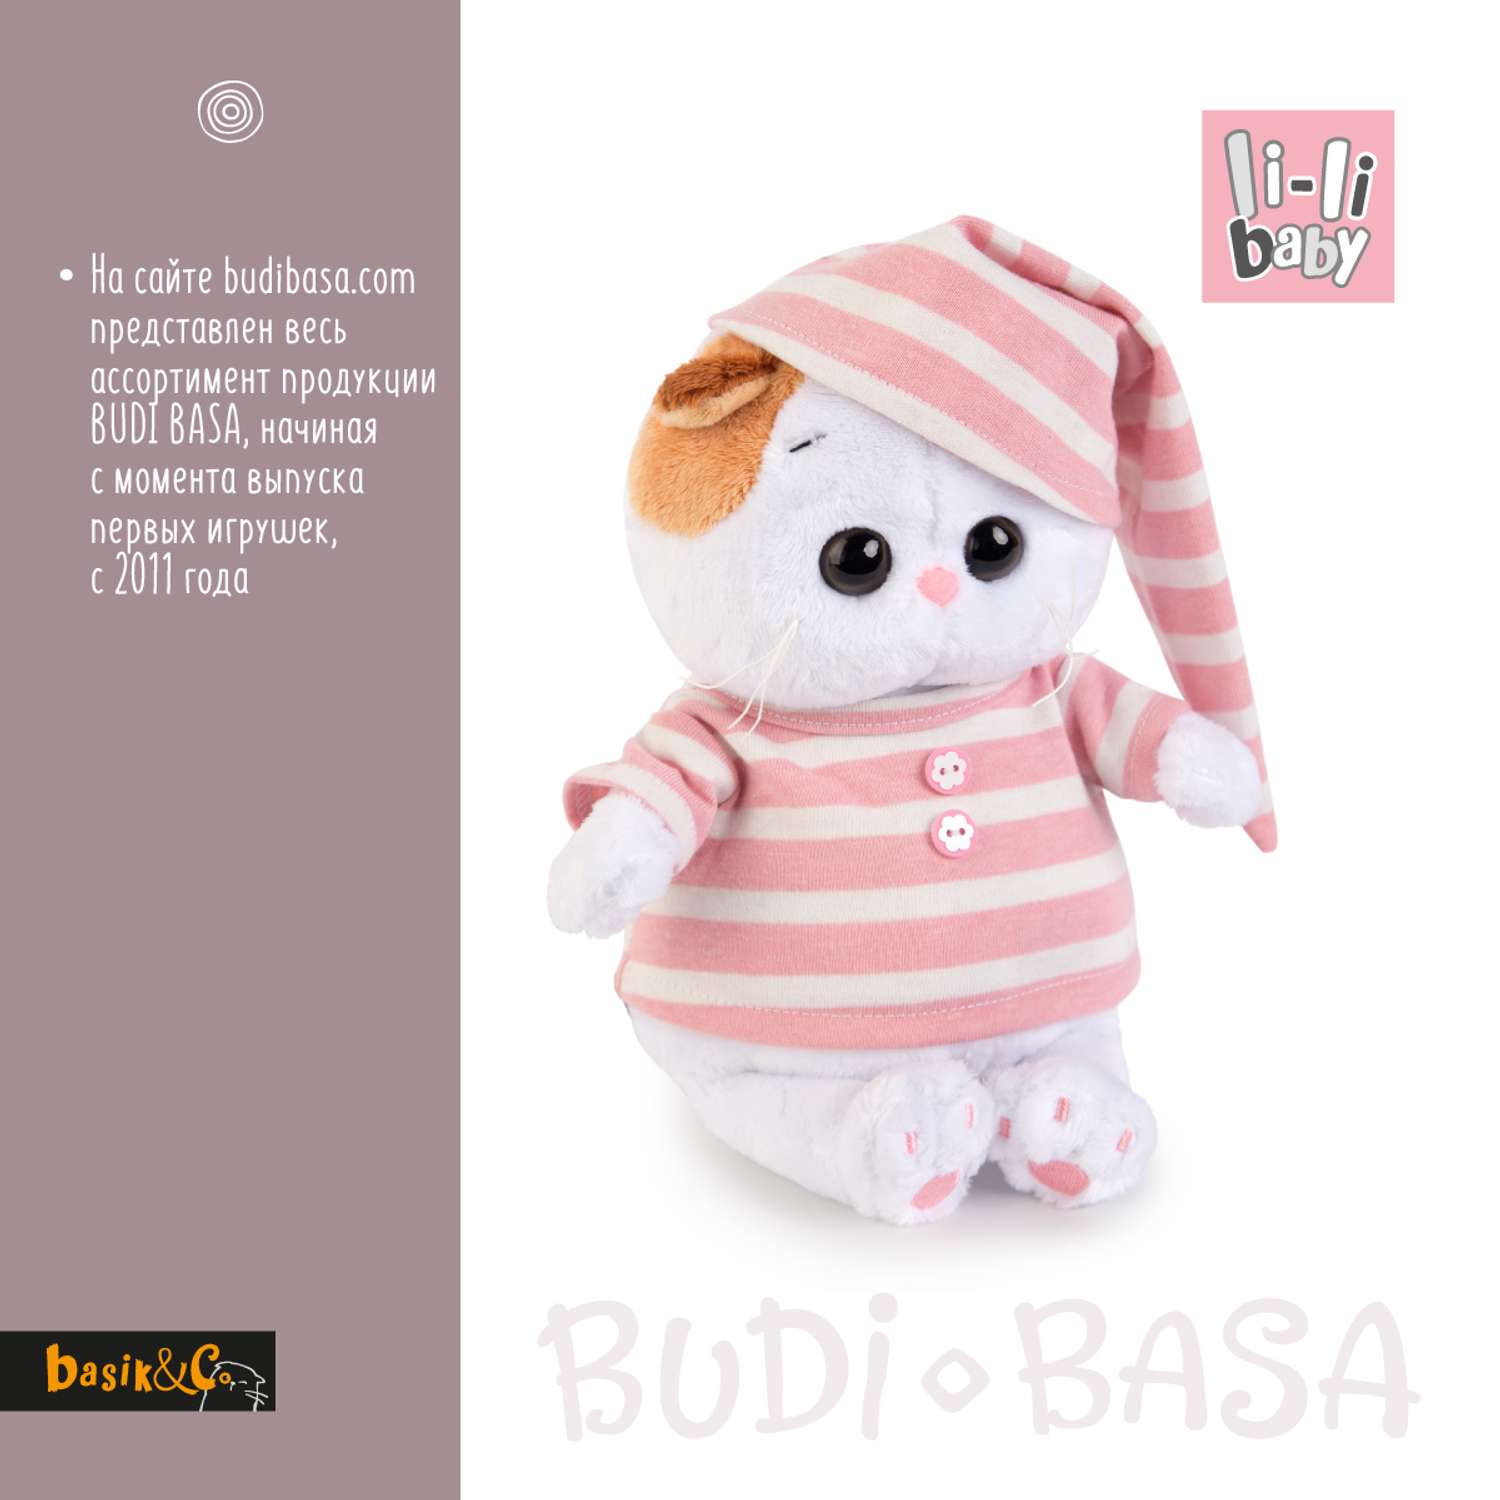 Мягкая игрушка BUDI BASA Ли-Ли baby в полосатой пижамке 20 см LB-005 - фото 4